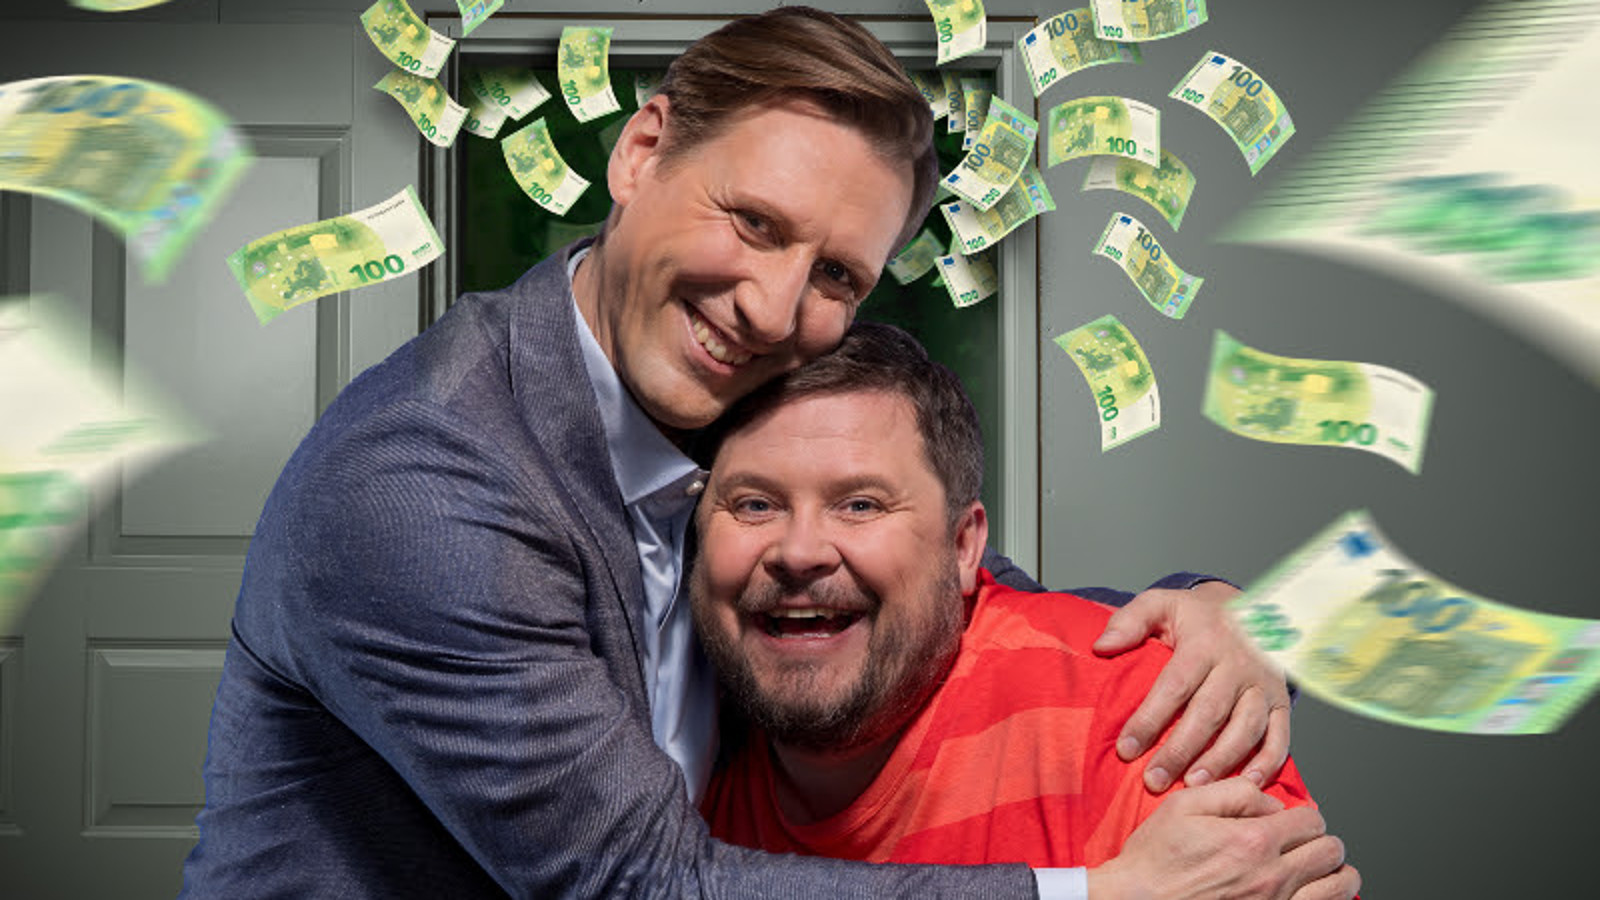 Kuvassa ovat Pekka Streng sinisessä takissa ja punasessa Janne Kataja, jota Streng rutistaa. Ympärillä vihreitä sadan euron seteltä.